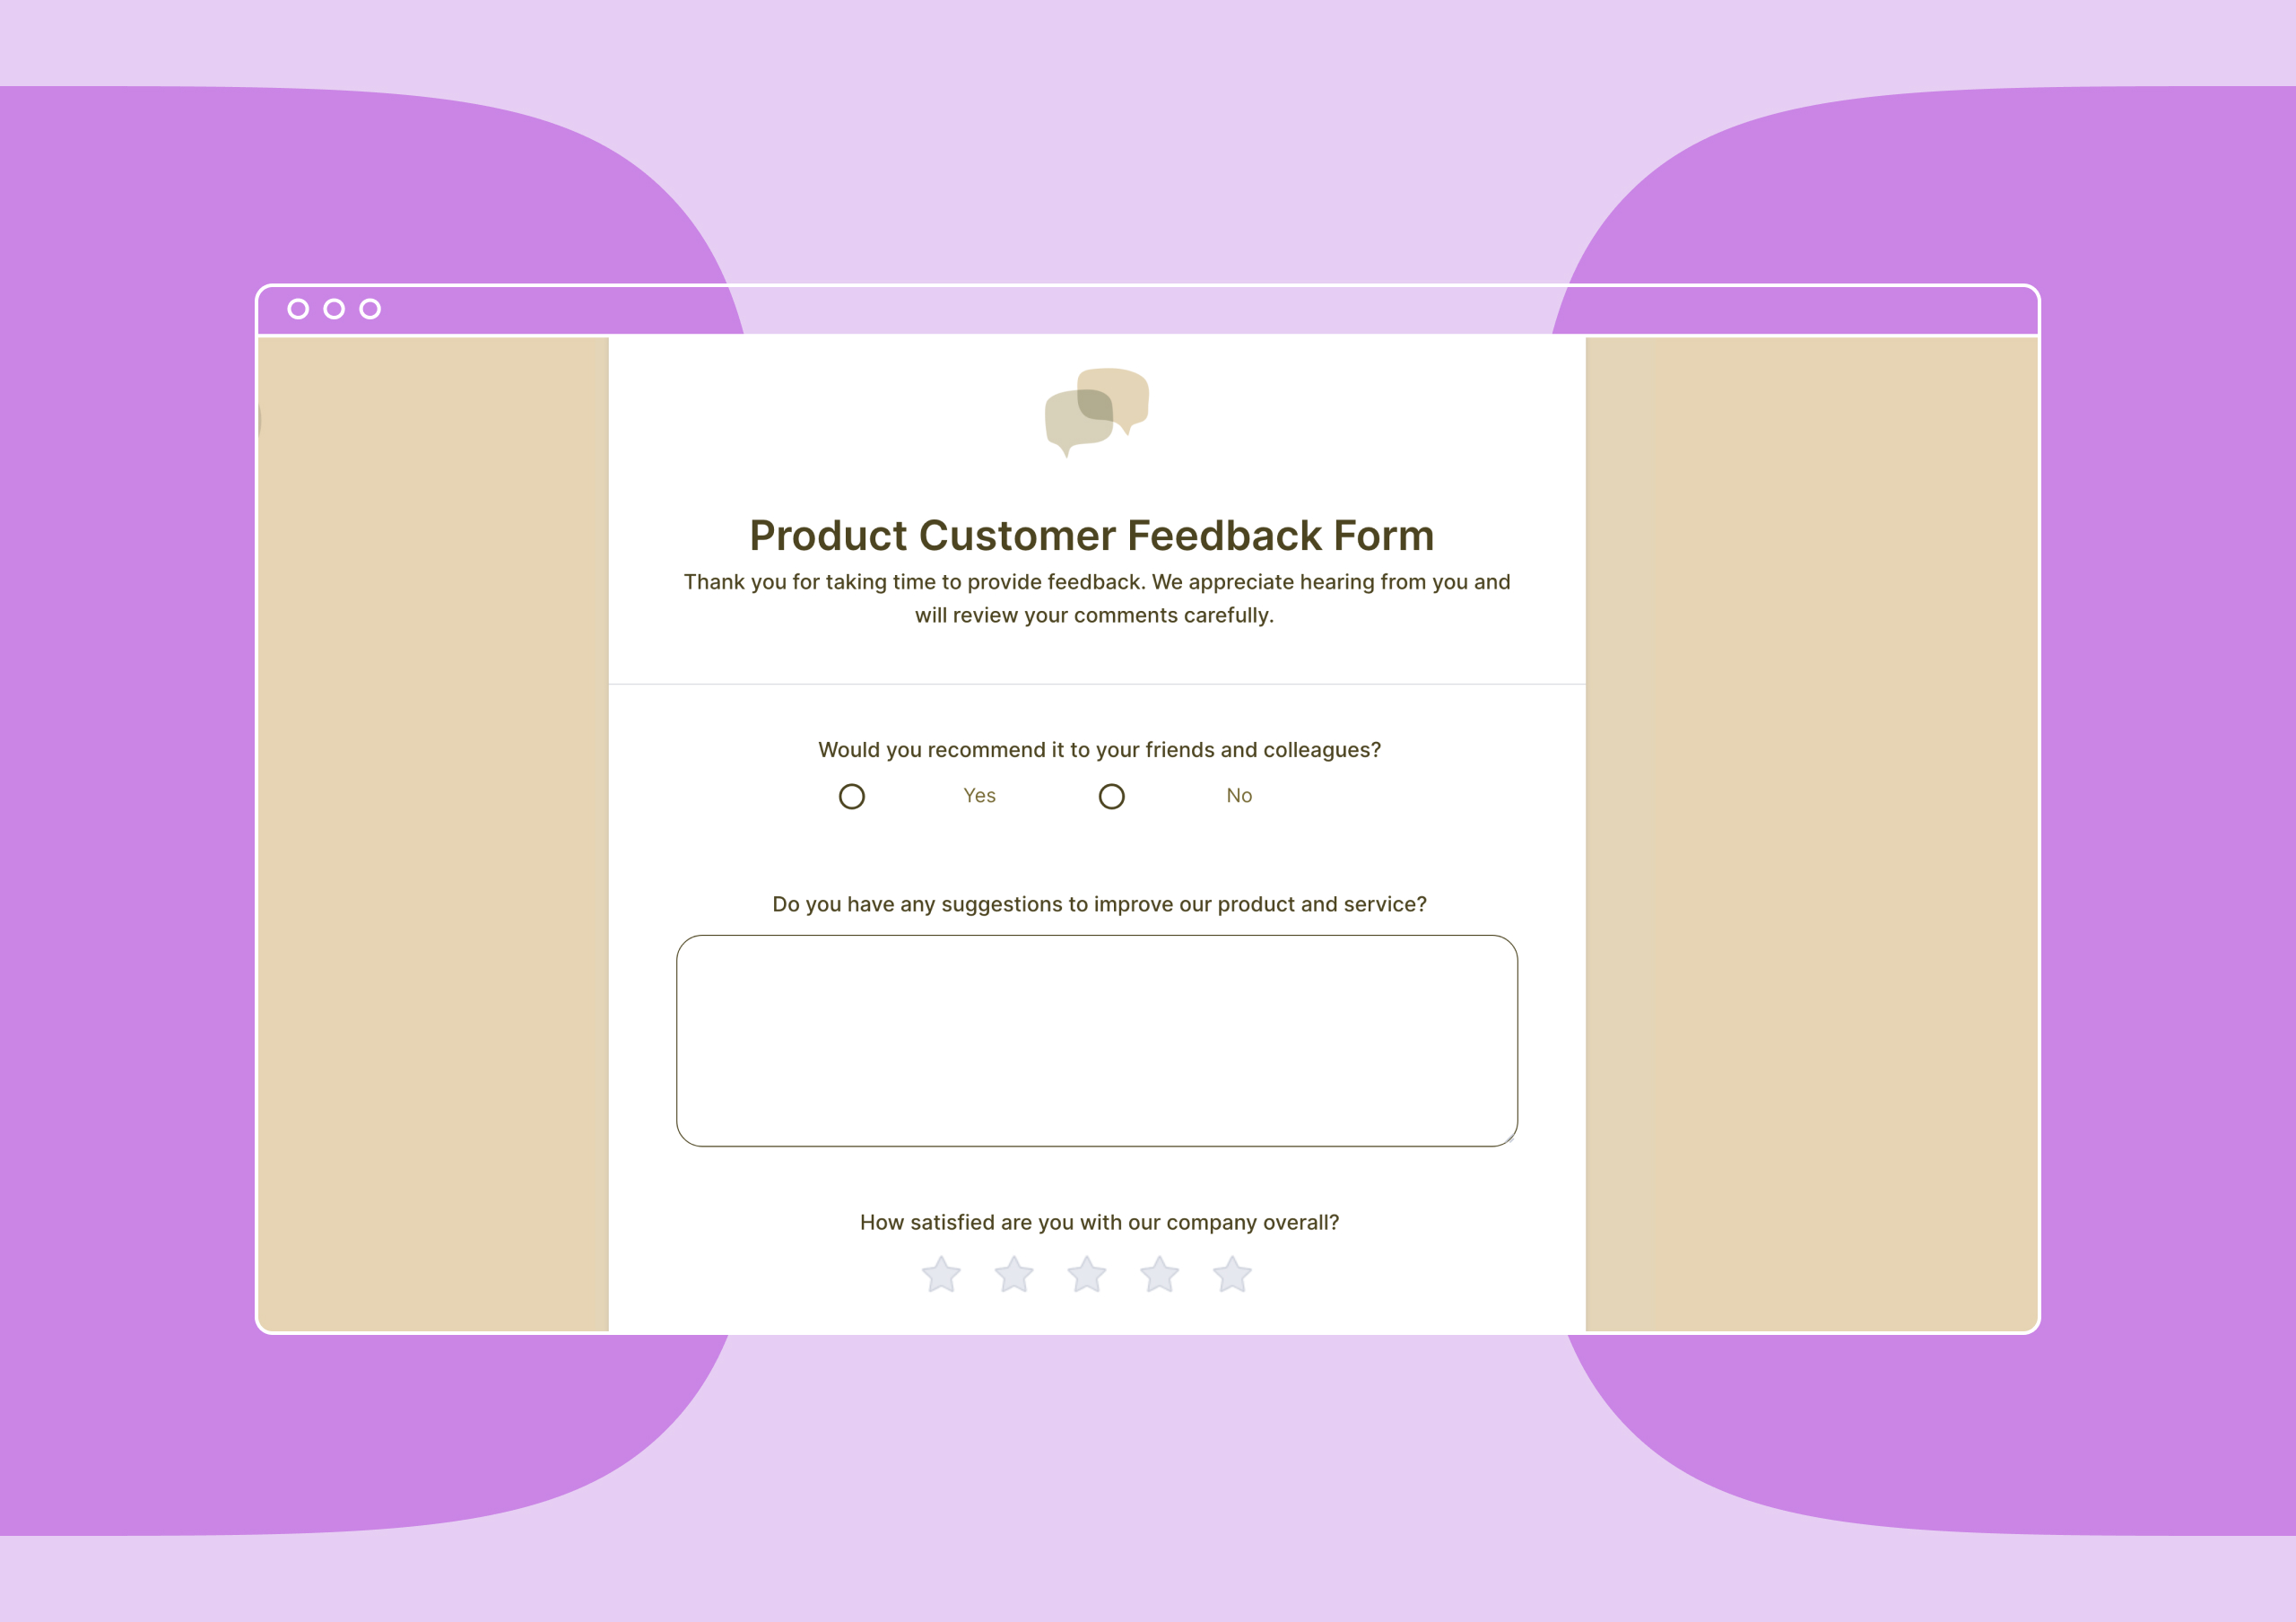 Example customer feedback question on Jotform.